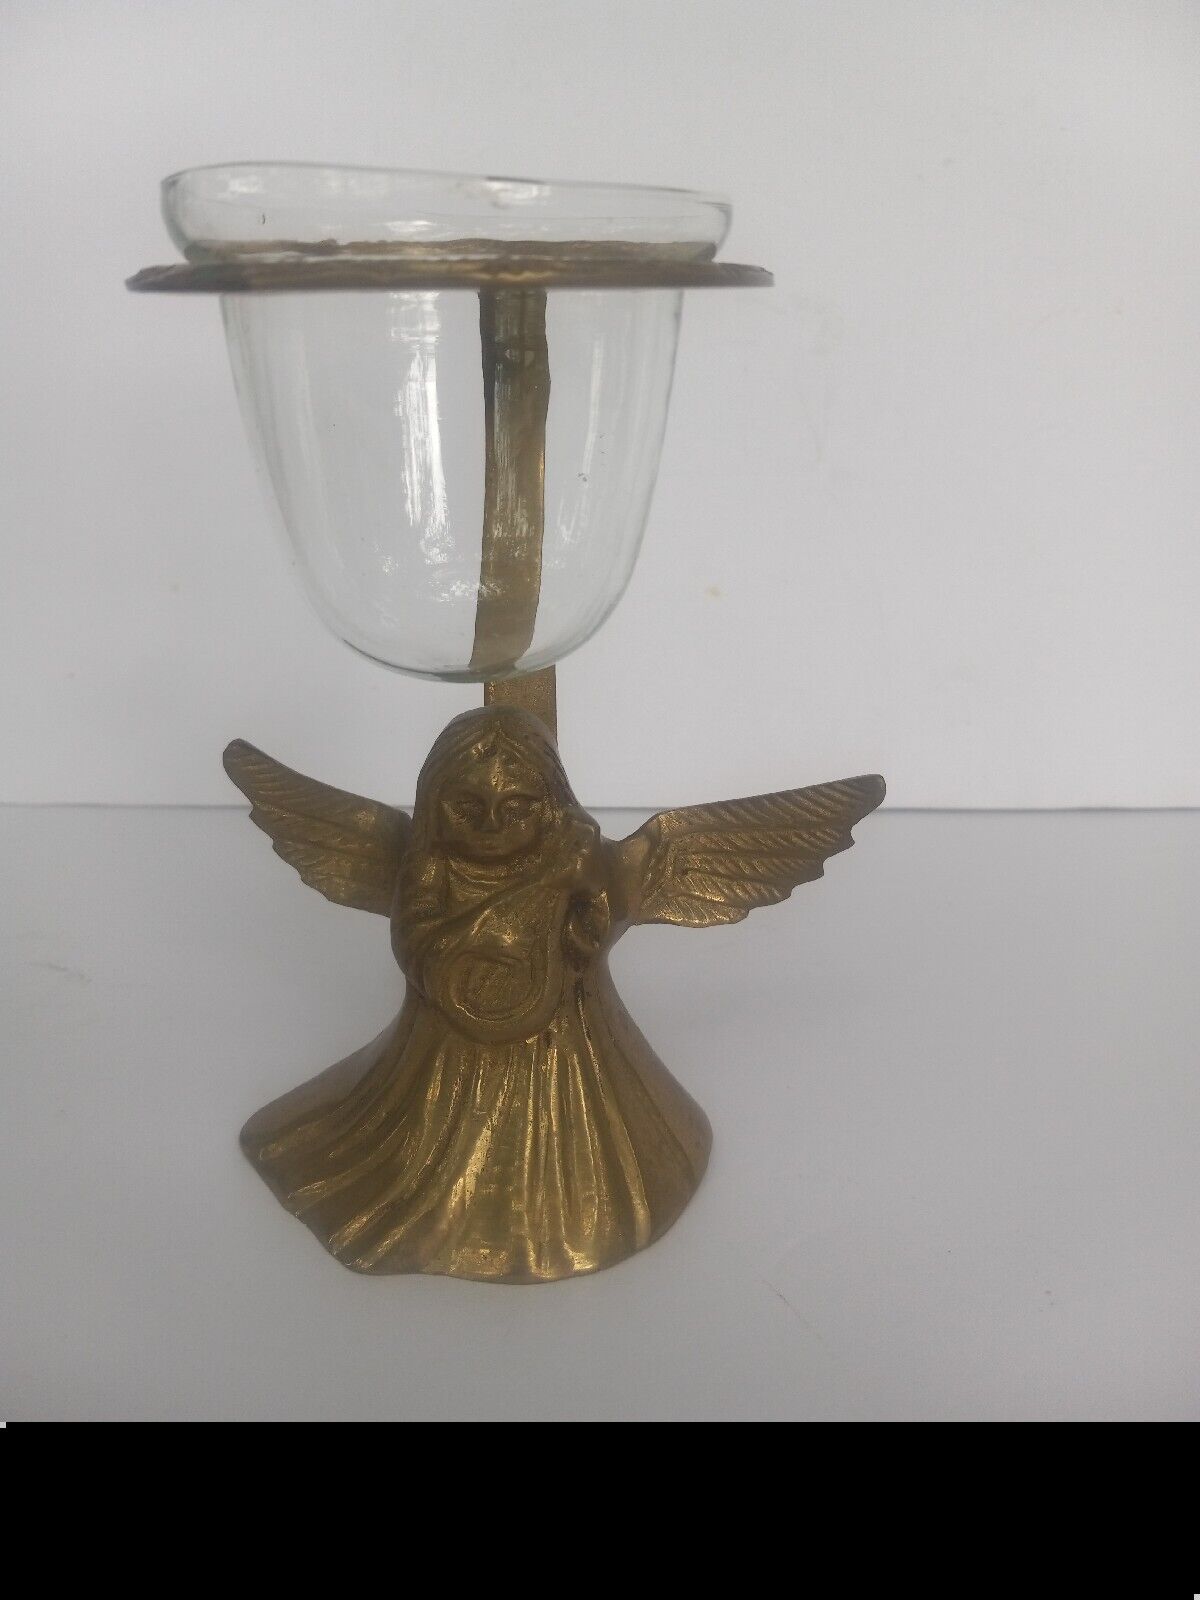 Brass Angel Cherub Christmas Votive Holder Ornate Vintage Holiday Decoration 